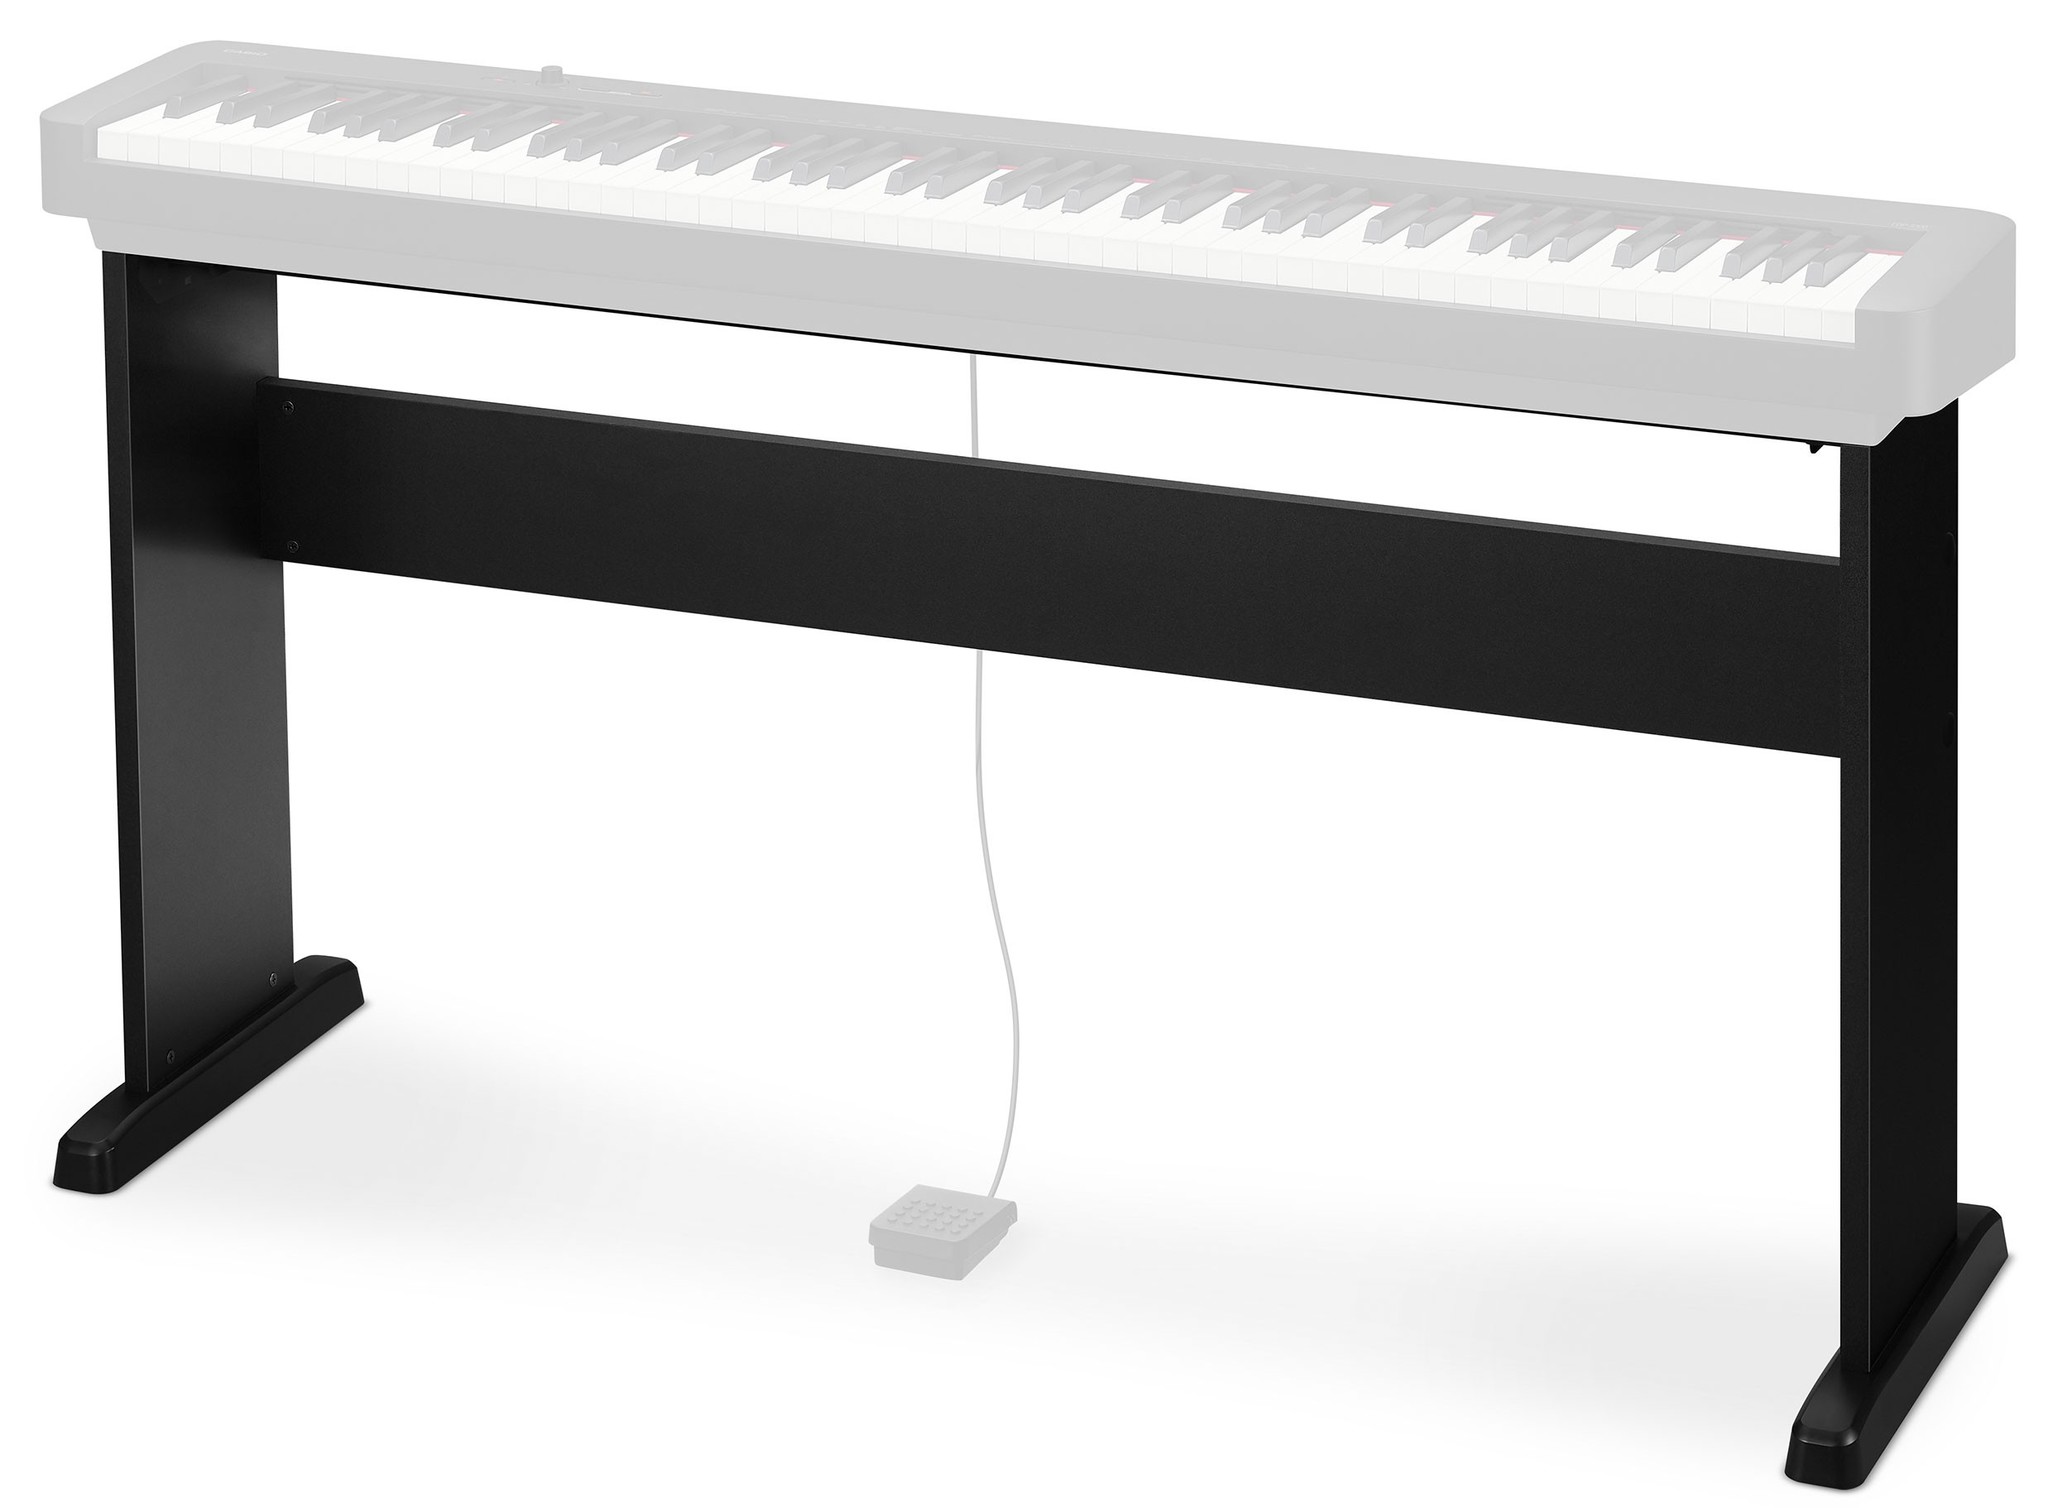 стол для электронного пианино своими руками